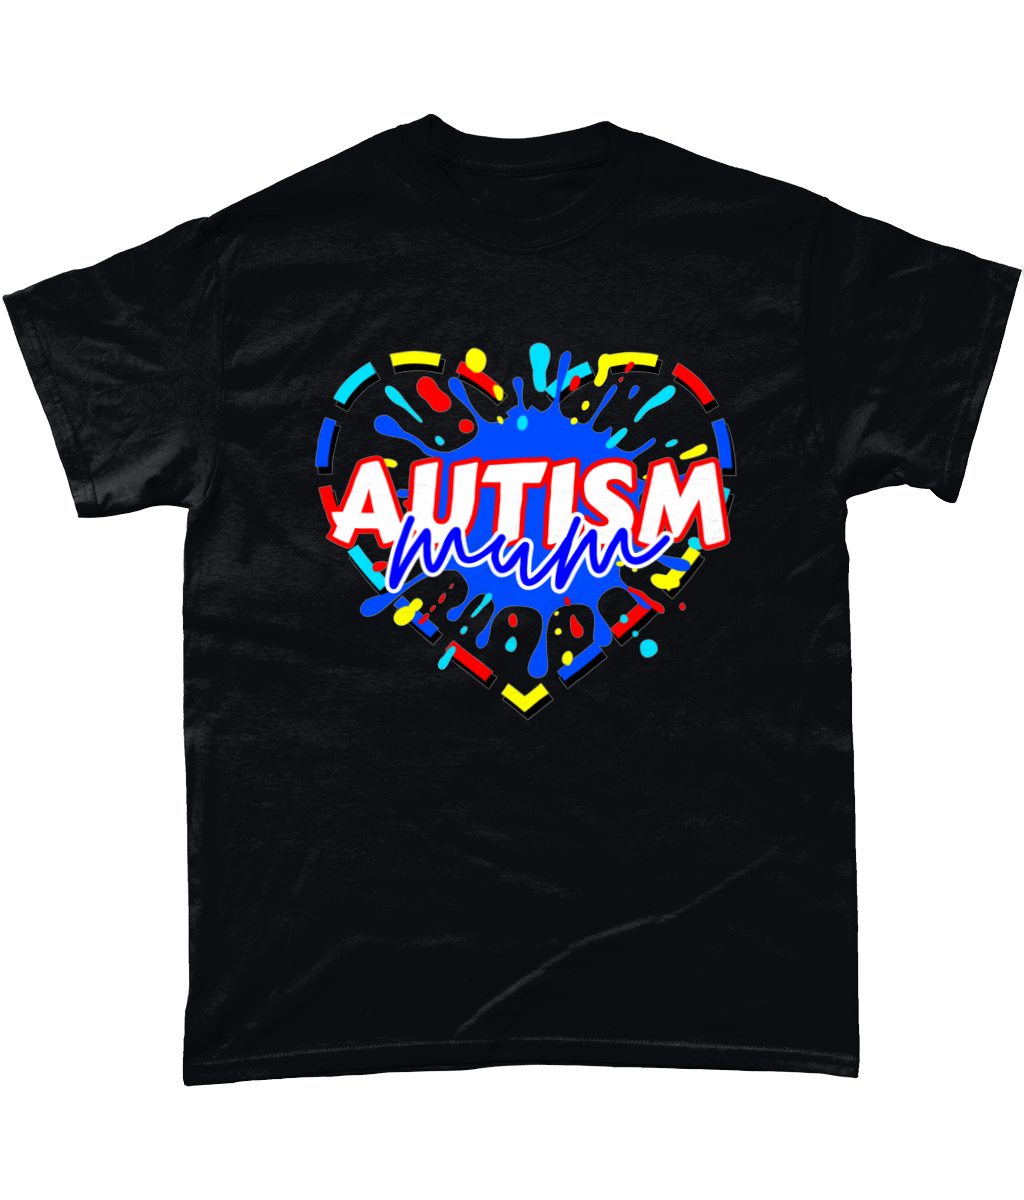 Autism mum t-shirt various colours